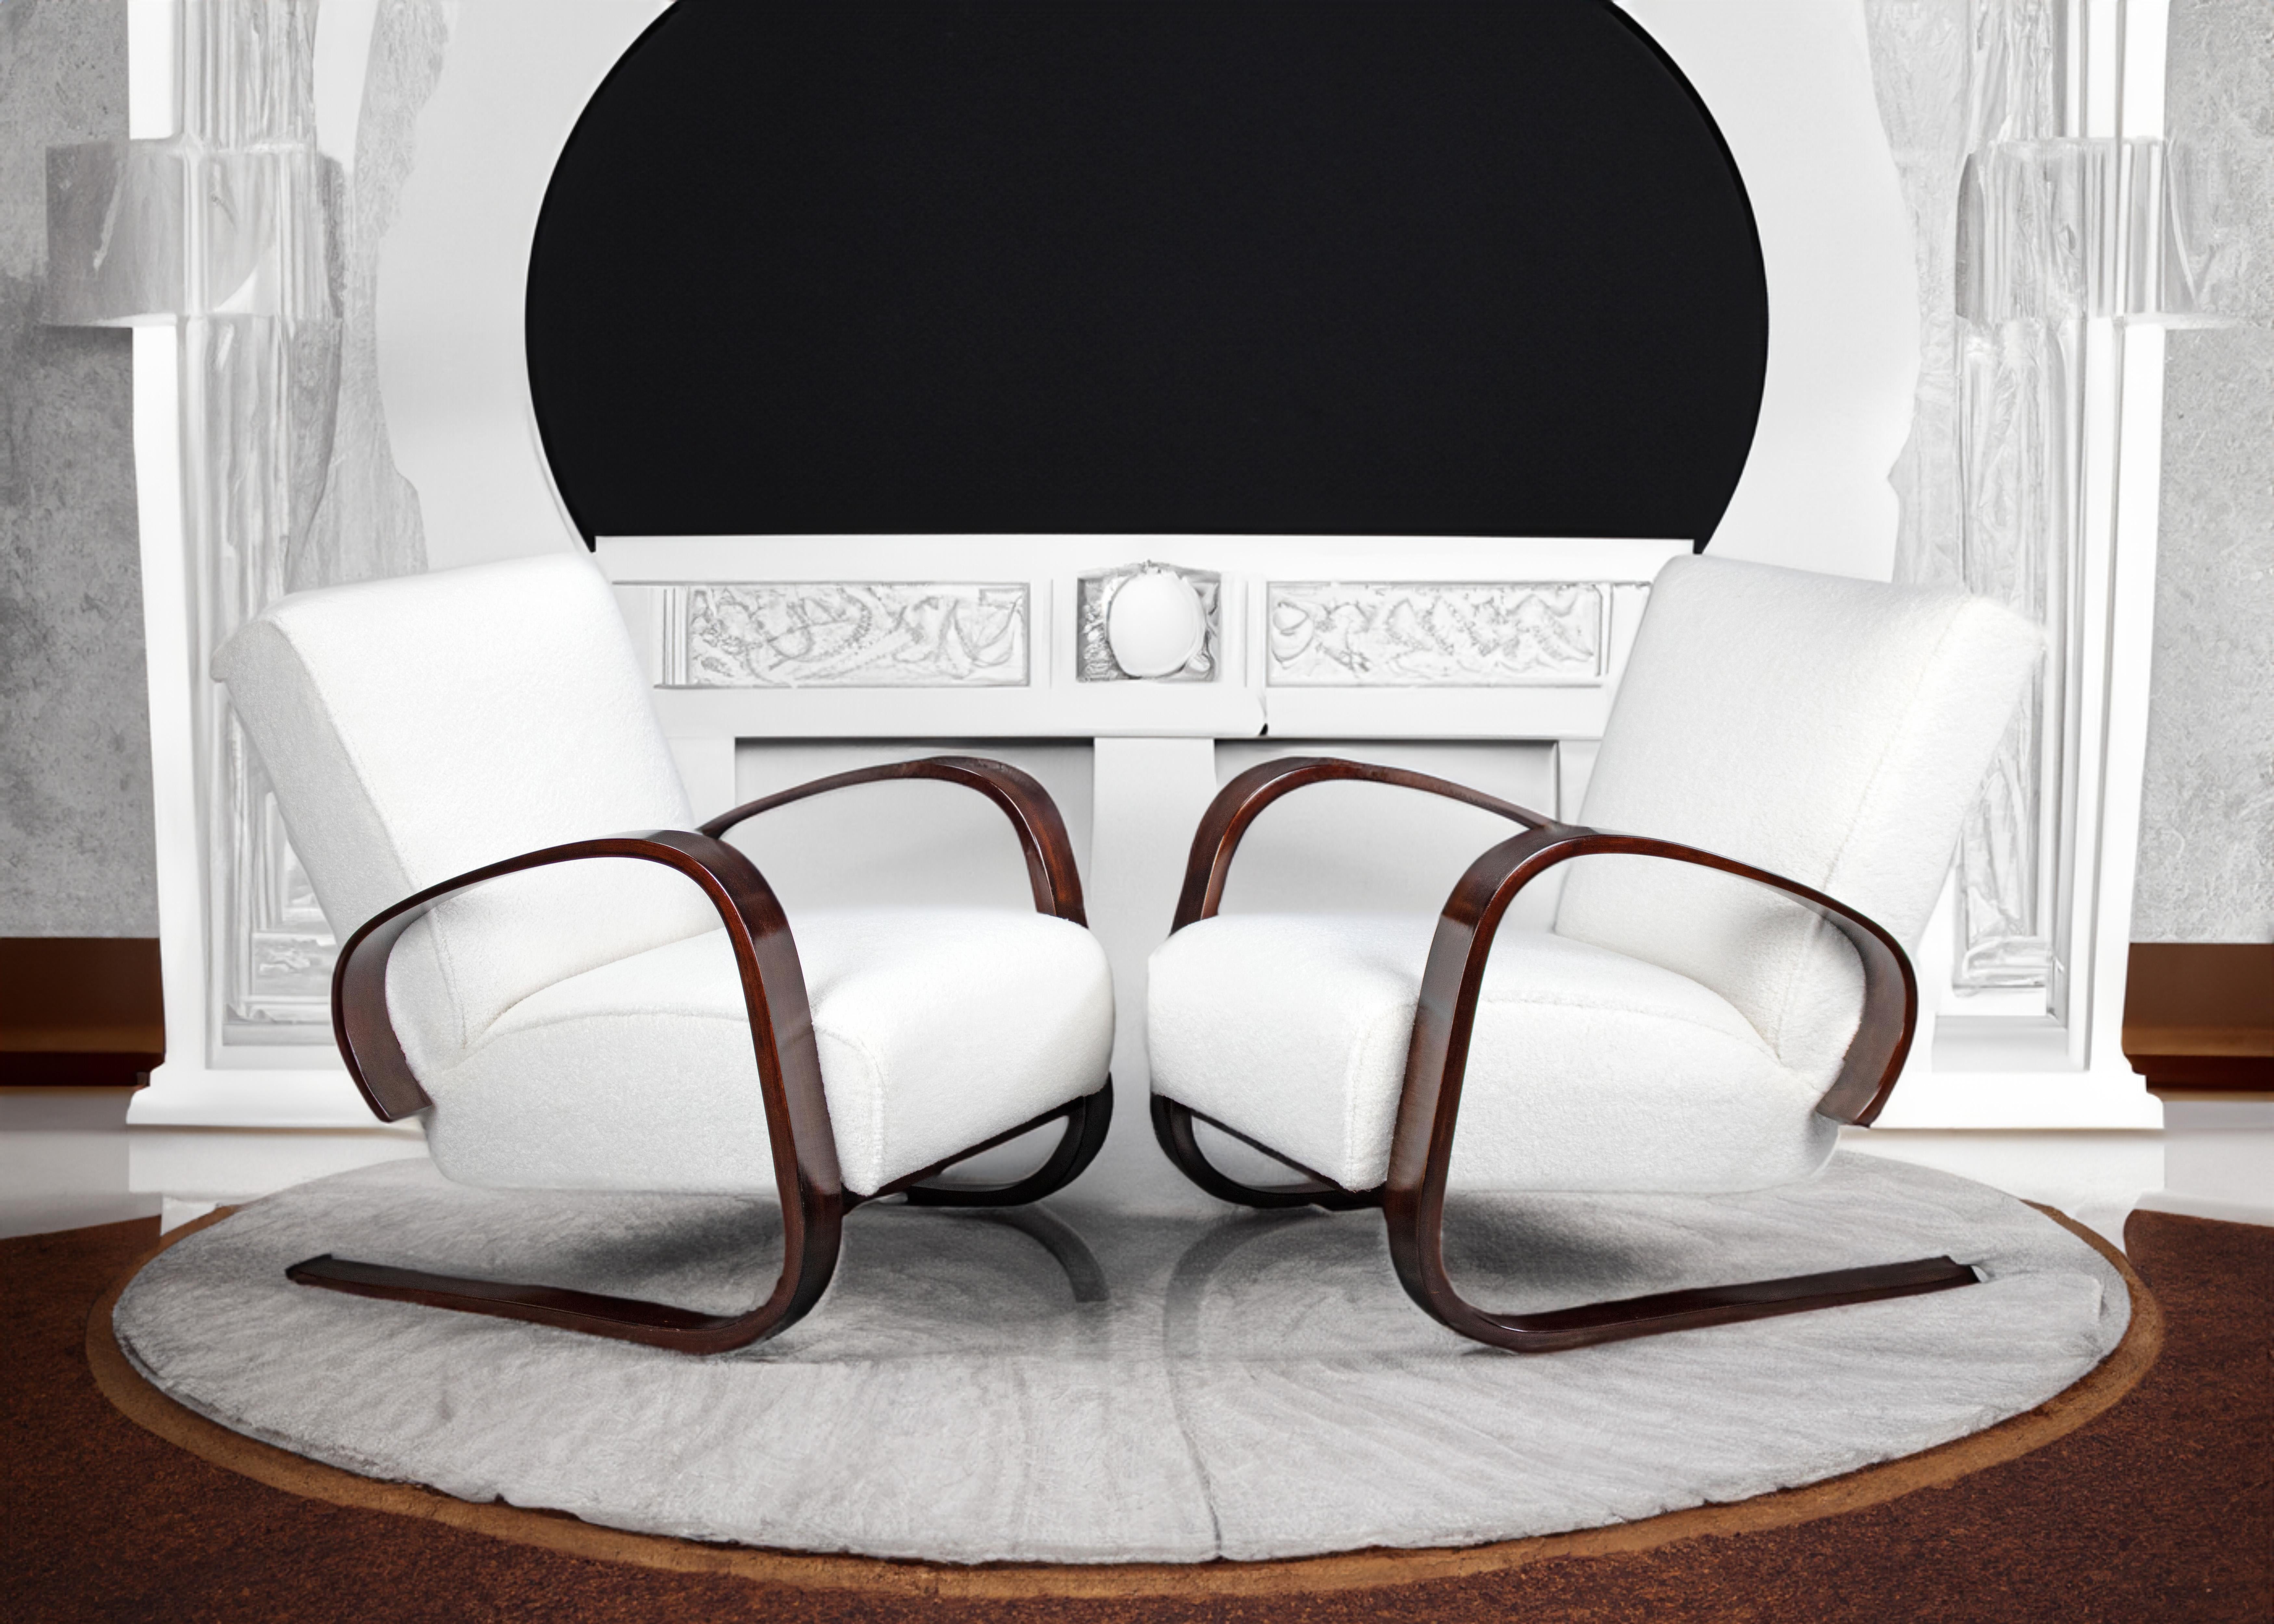 Cette magnifique paire de fauteuils Art déco a été conçue par Miroslav Navratil. Il s'est inspiré du Tank d'Alvar Aalto, on peut considérer ces fauteuils comme un hommage à ce dernier. Les fauteuils offrent une assise excellente et confortable. Les